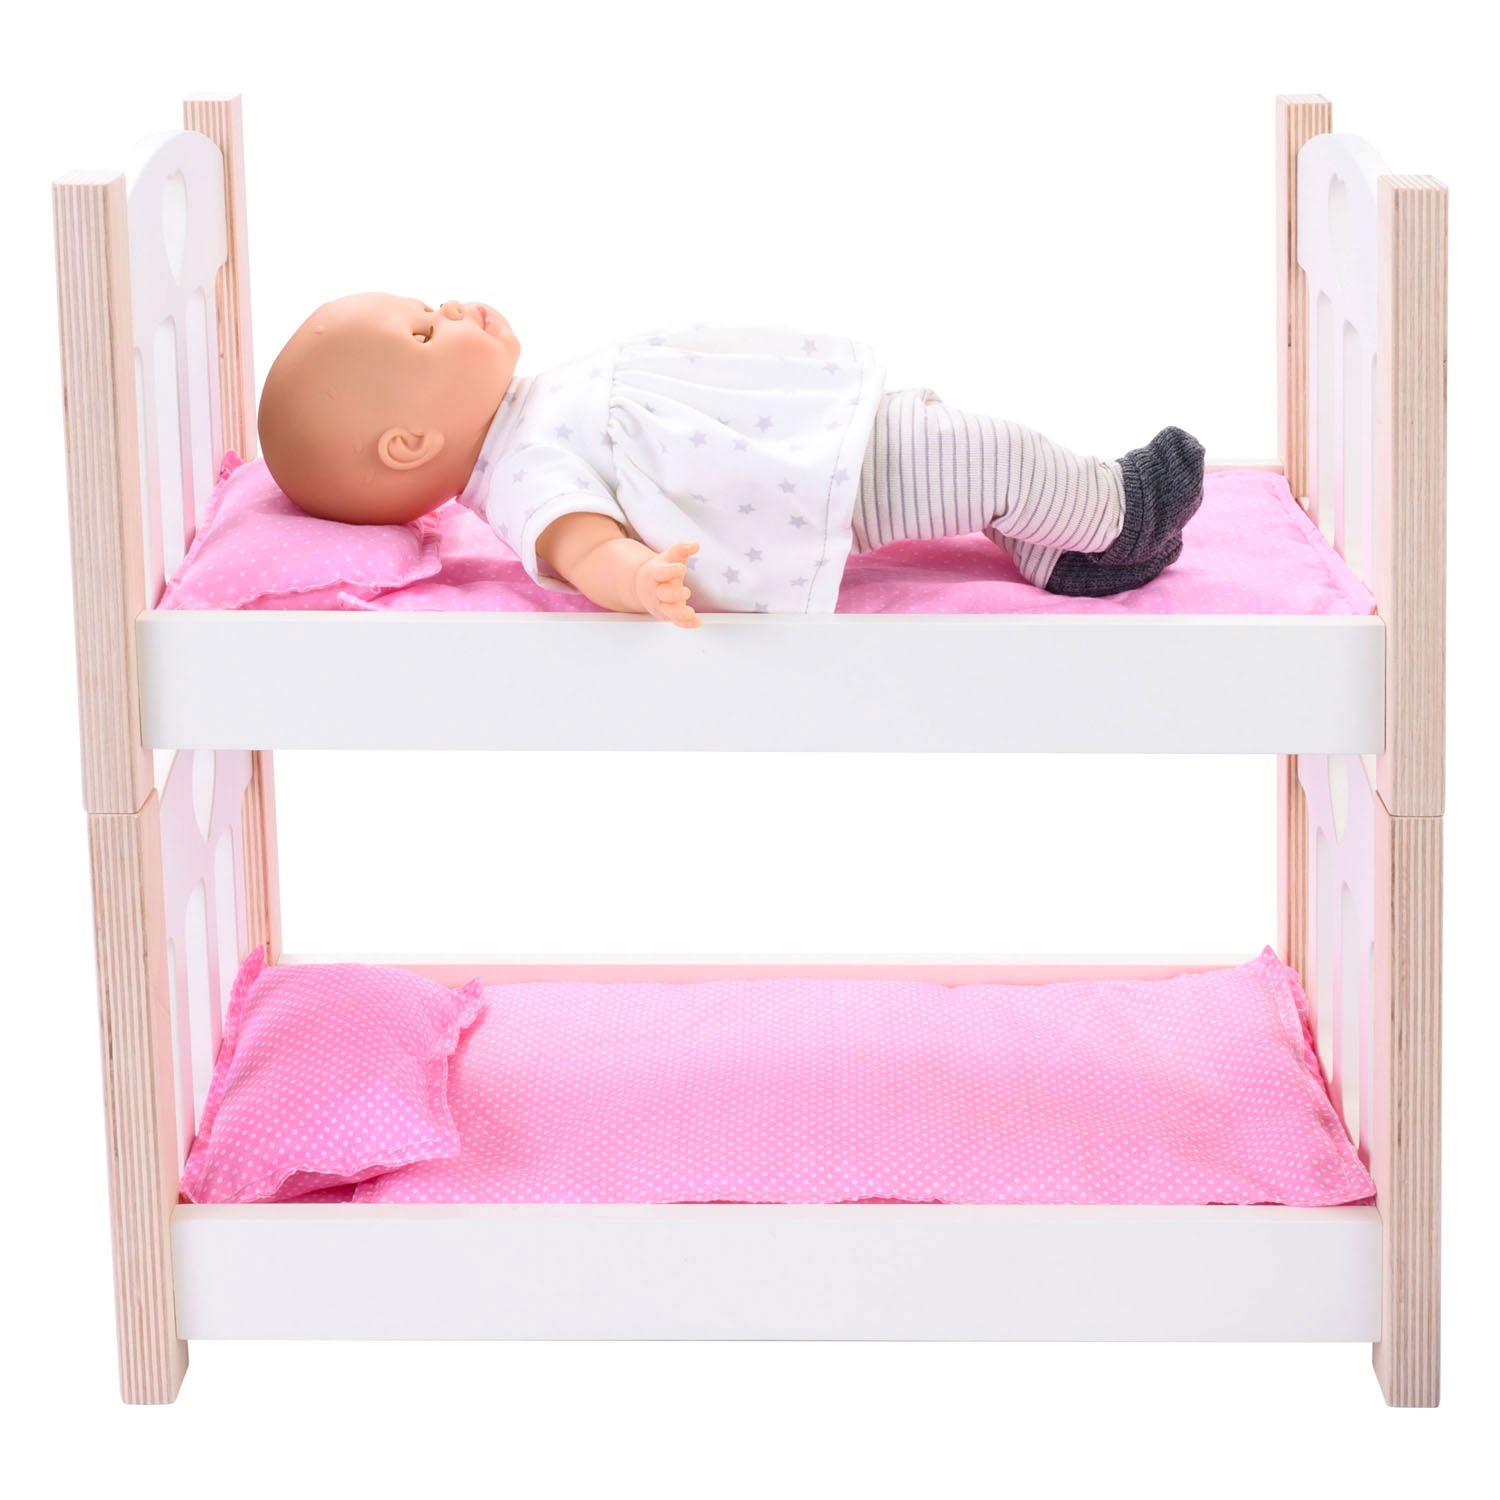 Puppen-Etagenbett rosa/weiß